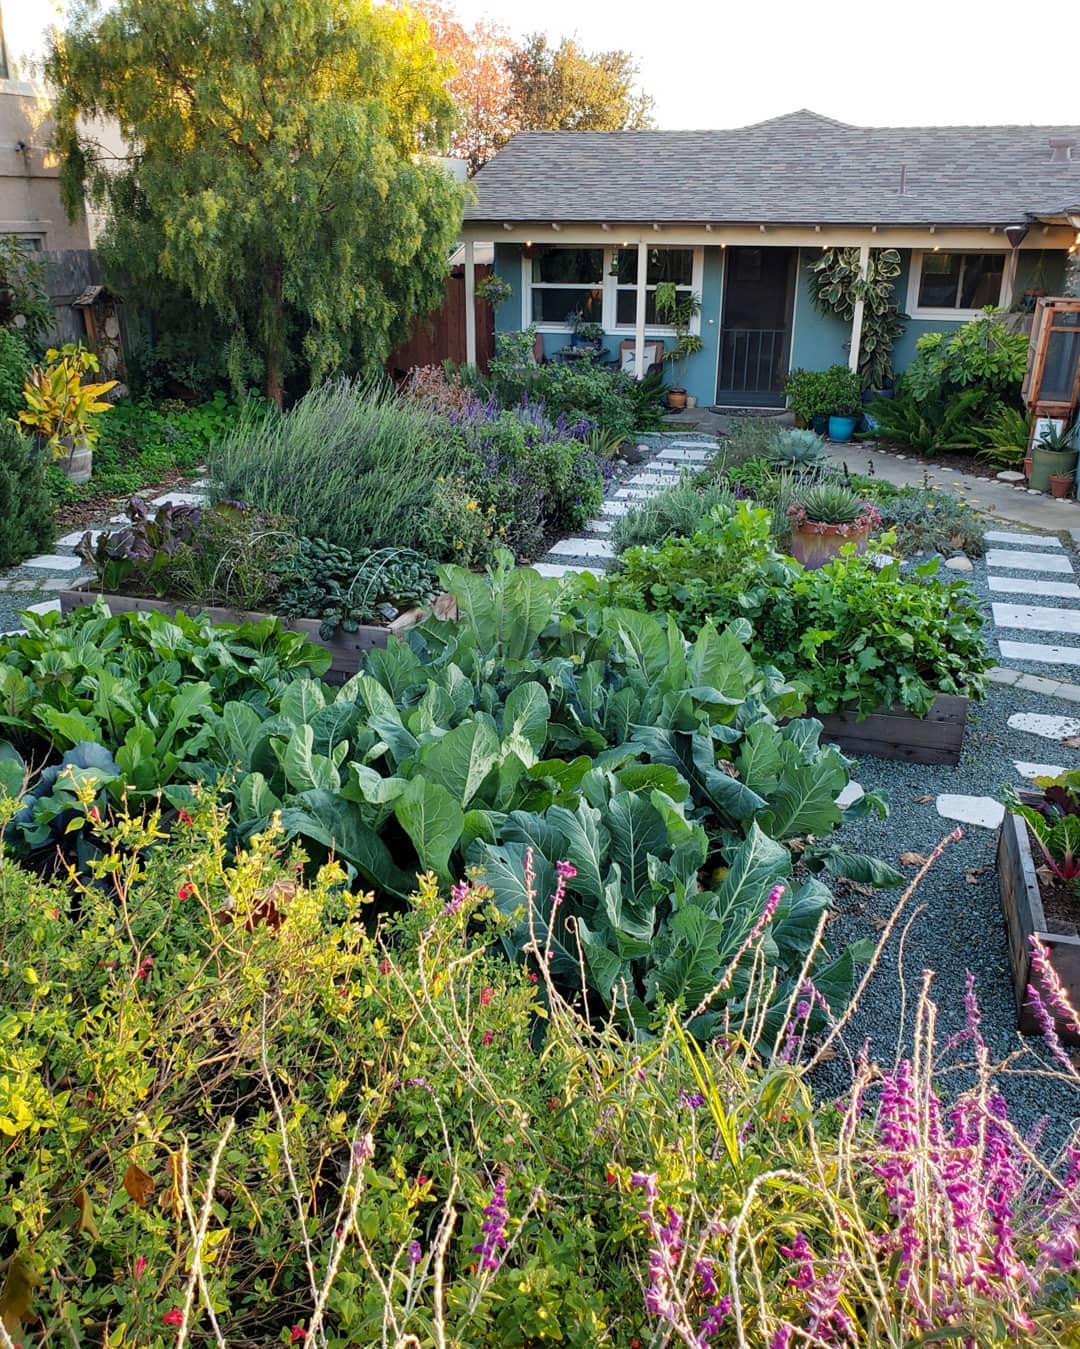 Nhà vườn trồng rau: Nhà vườn trồng rau là nơi bạn có thể tự tay trồng và chăm sóc những loại rau sạch nhất để bảo vệ sức khỏe của bạn và gia đình. Đặt tay vào đất để trồng, tưới nước và chăm sóc, bạn sẽ cảm nhận được niềm hạnh phúc khi thấy các loại rau của mình lớn lên và trổ bông. Hãy cùng nhau trồng rau và chăm sóc nhà vườn để có một cuộc sống lành mạnh và xanh tự nhiên!